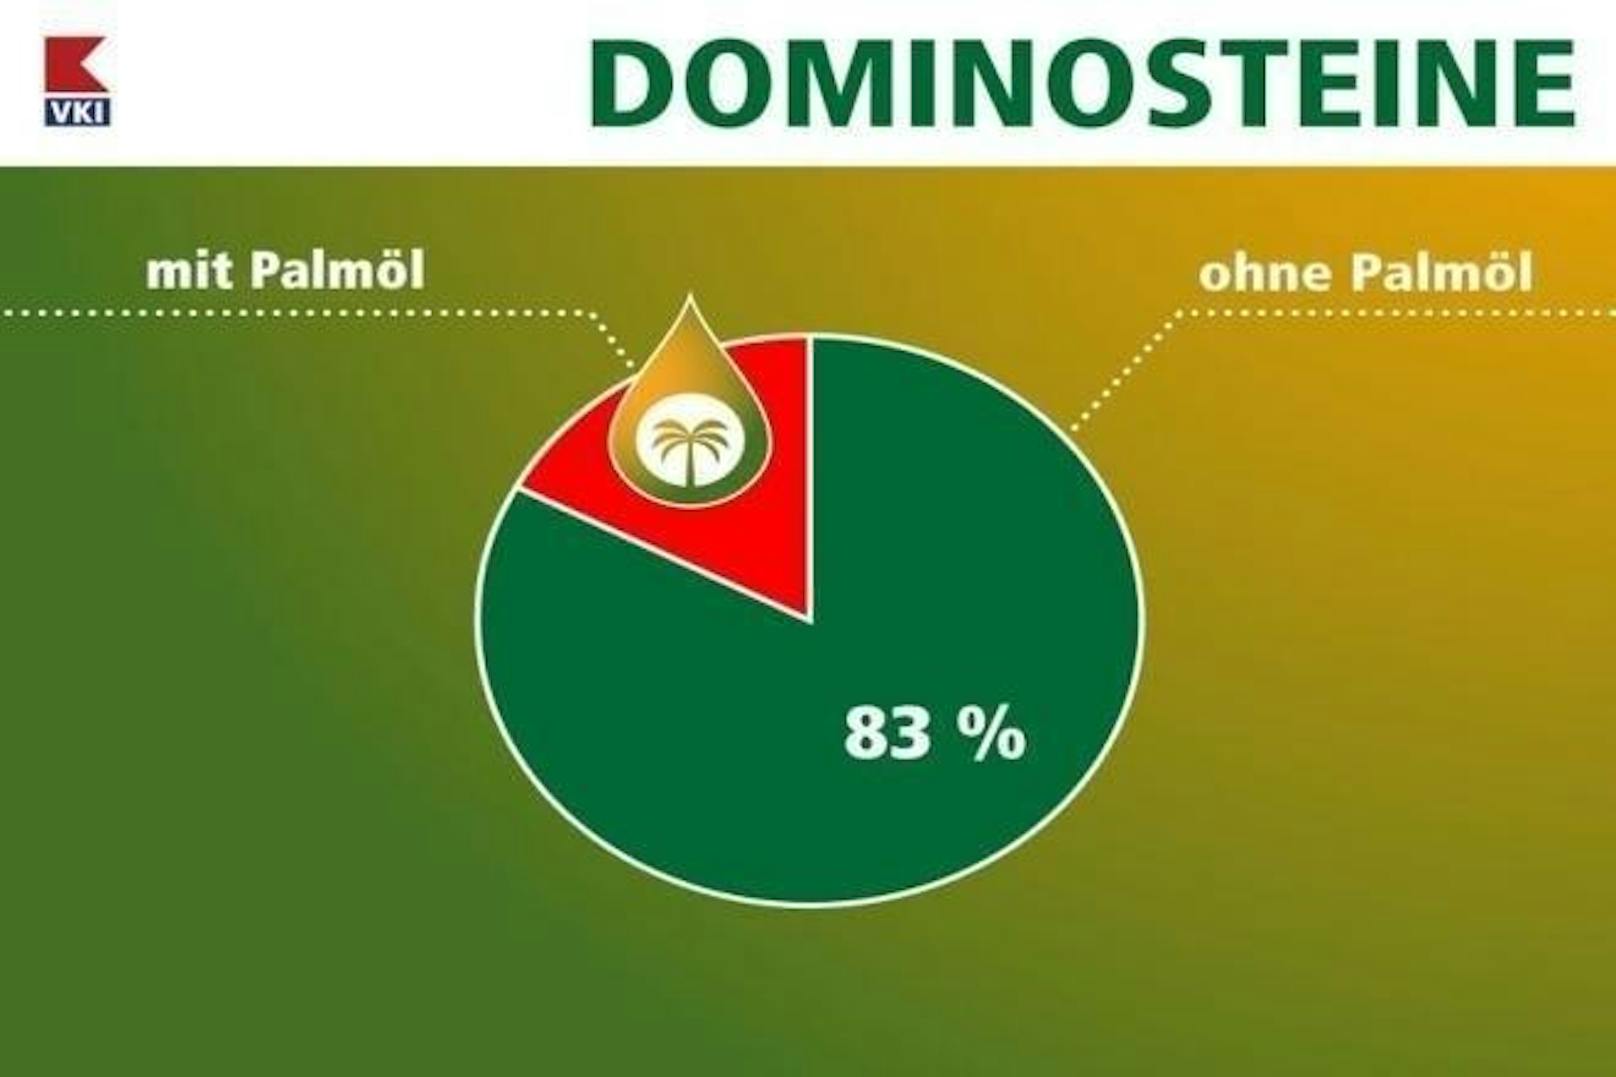 Bei Dominosteinen handelt es sich um Schichtpralinen, die unter anderem Lebkuchen, Konfitüre und Marzipan enthalten. Fett ist eventuell für den Schokoguss nötigt. 83 Prozent der überprüften Produkte kommen ohne Palmöl aus. 